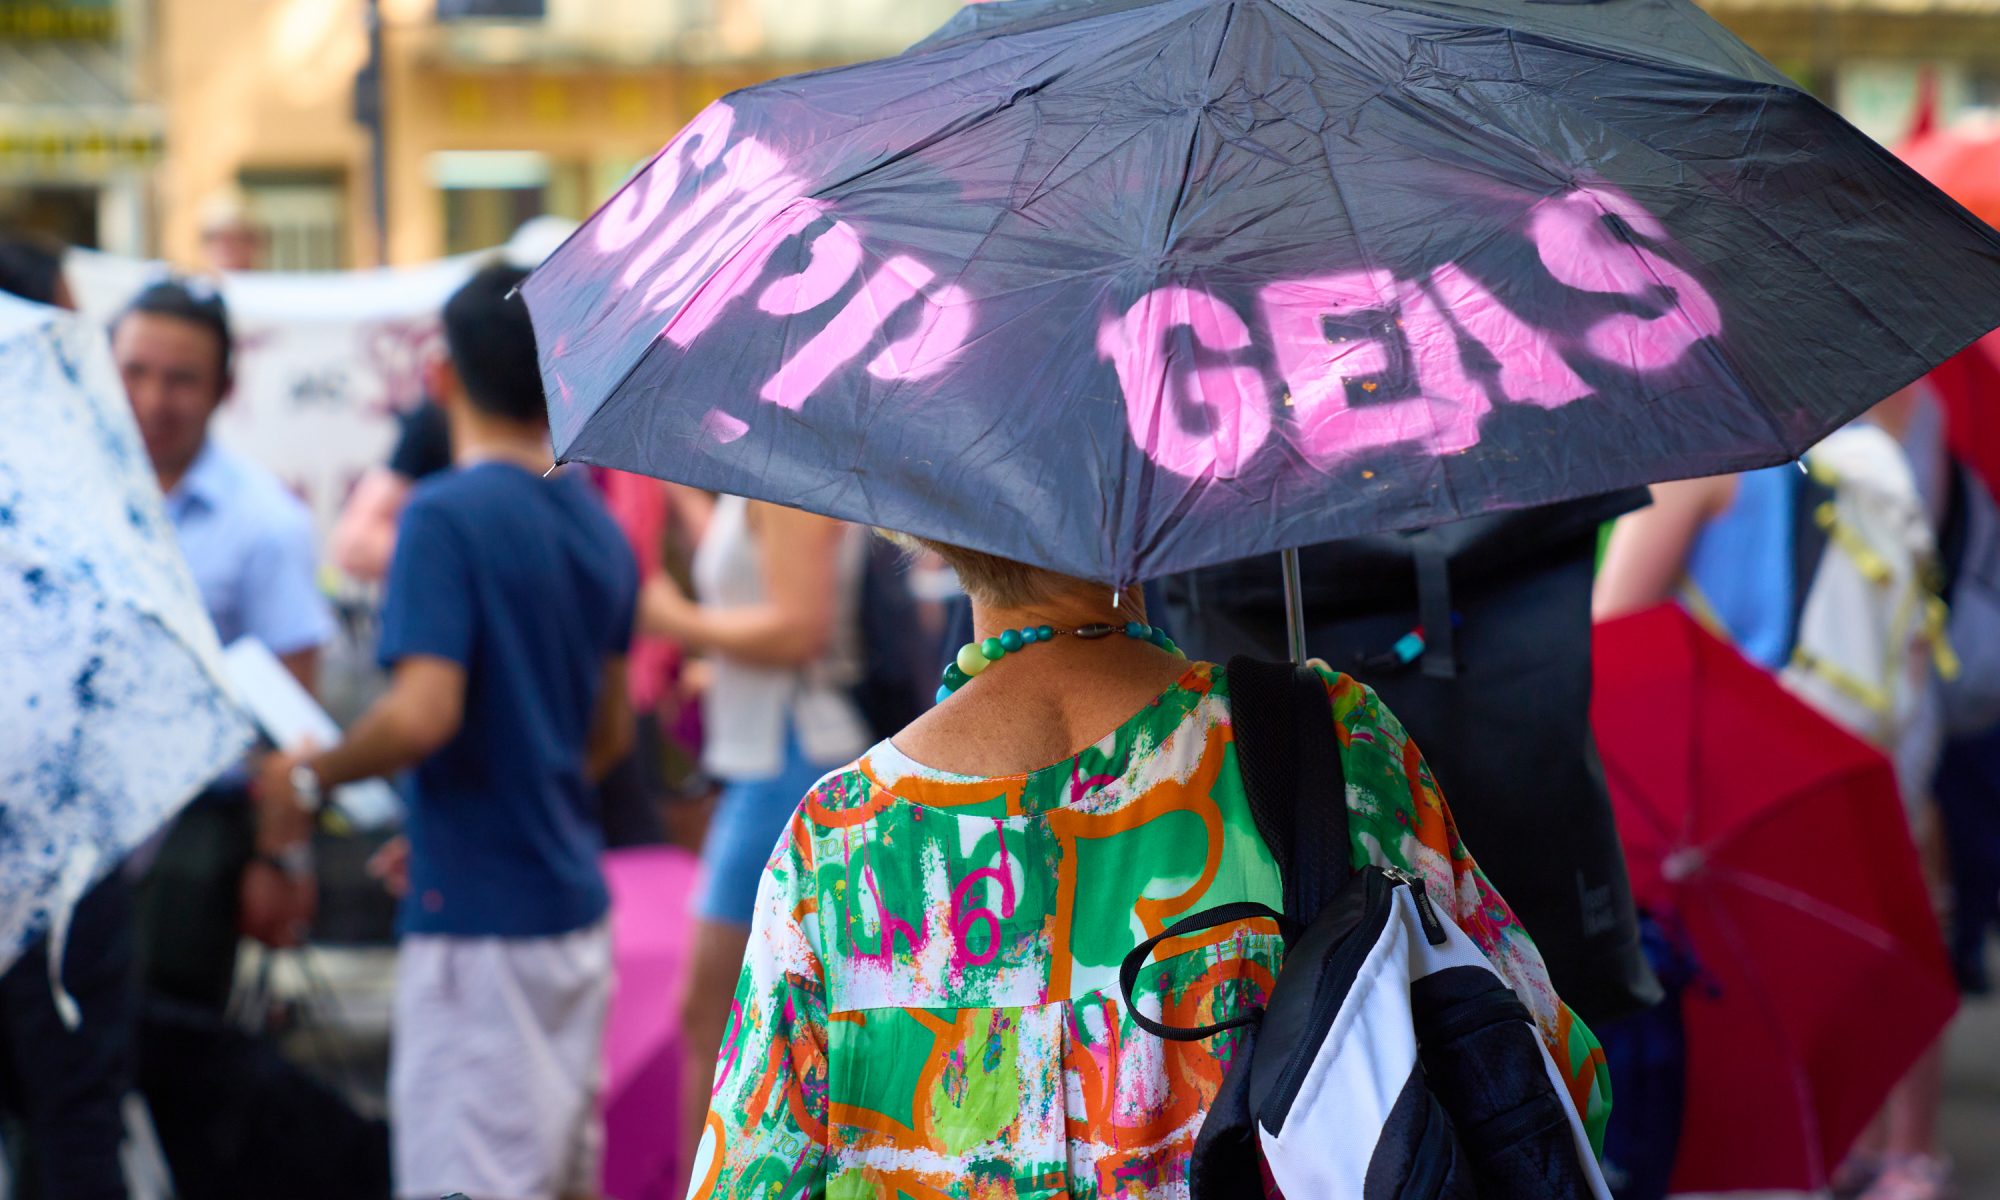 Frau von hinten mit Regenschirm in der Hand. Regenschirm trägt die Aufschrift "Stopp Geas"